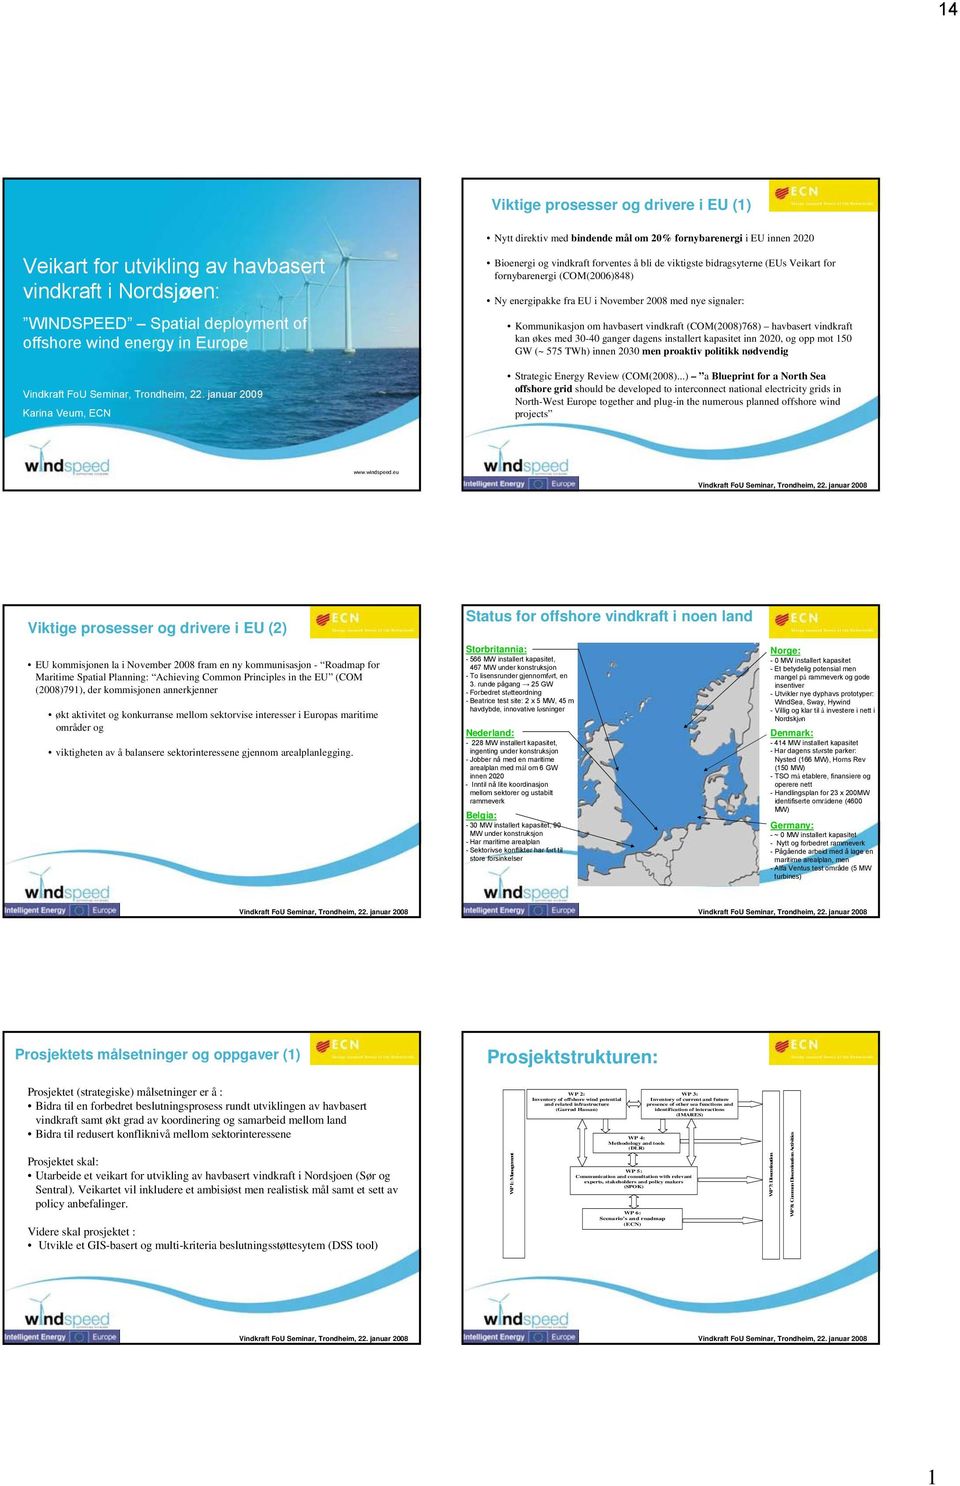 (COM(2006)848) Ny energipakke fra EU i November 2008 med nye signaler: Kommunikasjon om havbasert vindkraft (COM(2008)768) havbasert vindkraft kan økes med 30-40 ganger dagens installert kapasitet